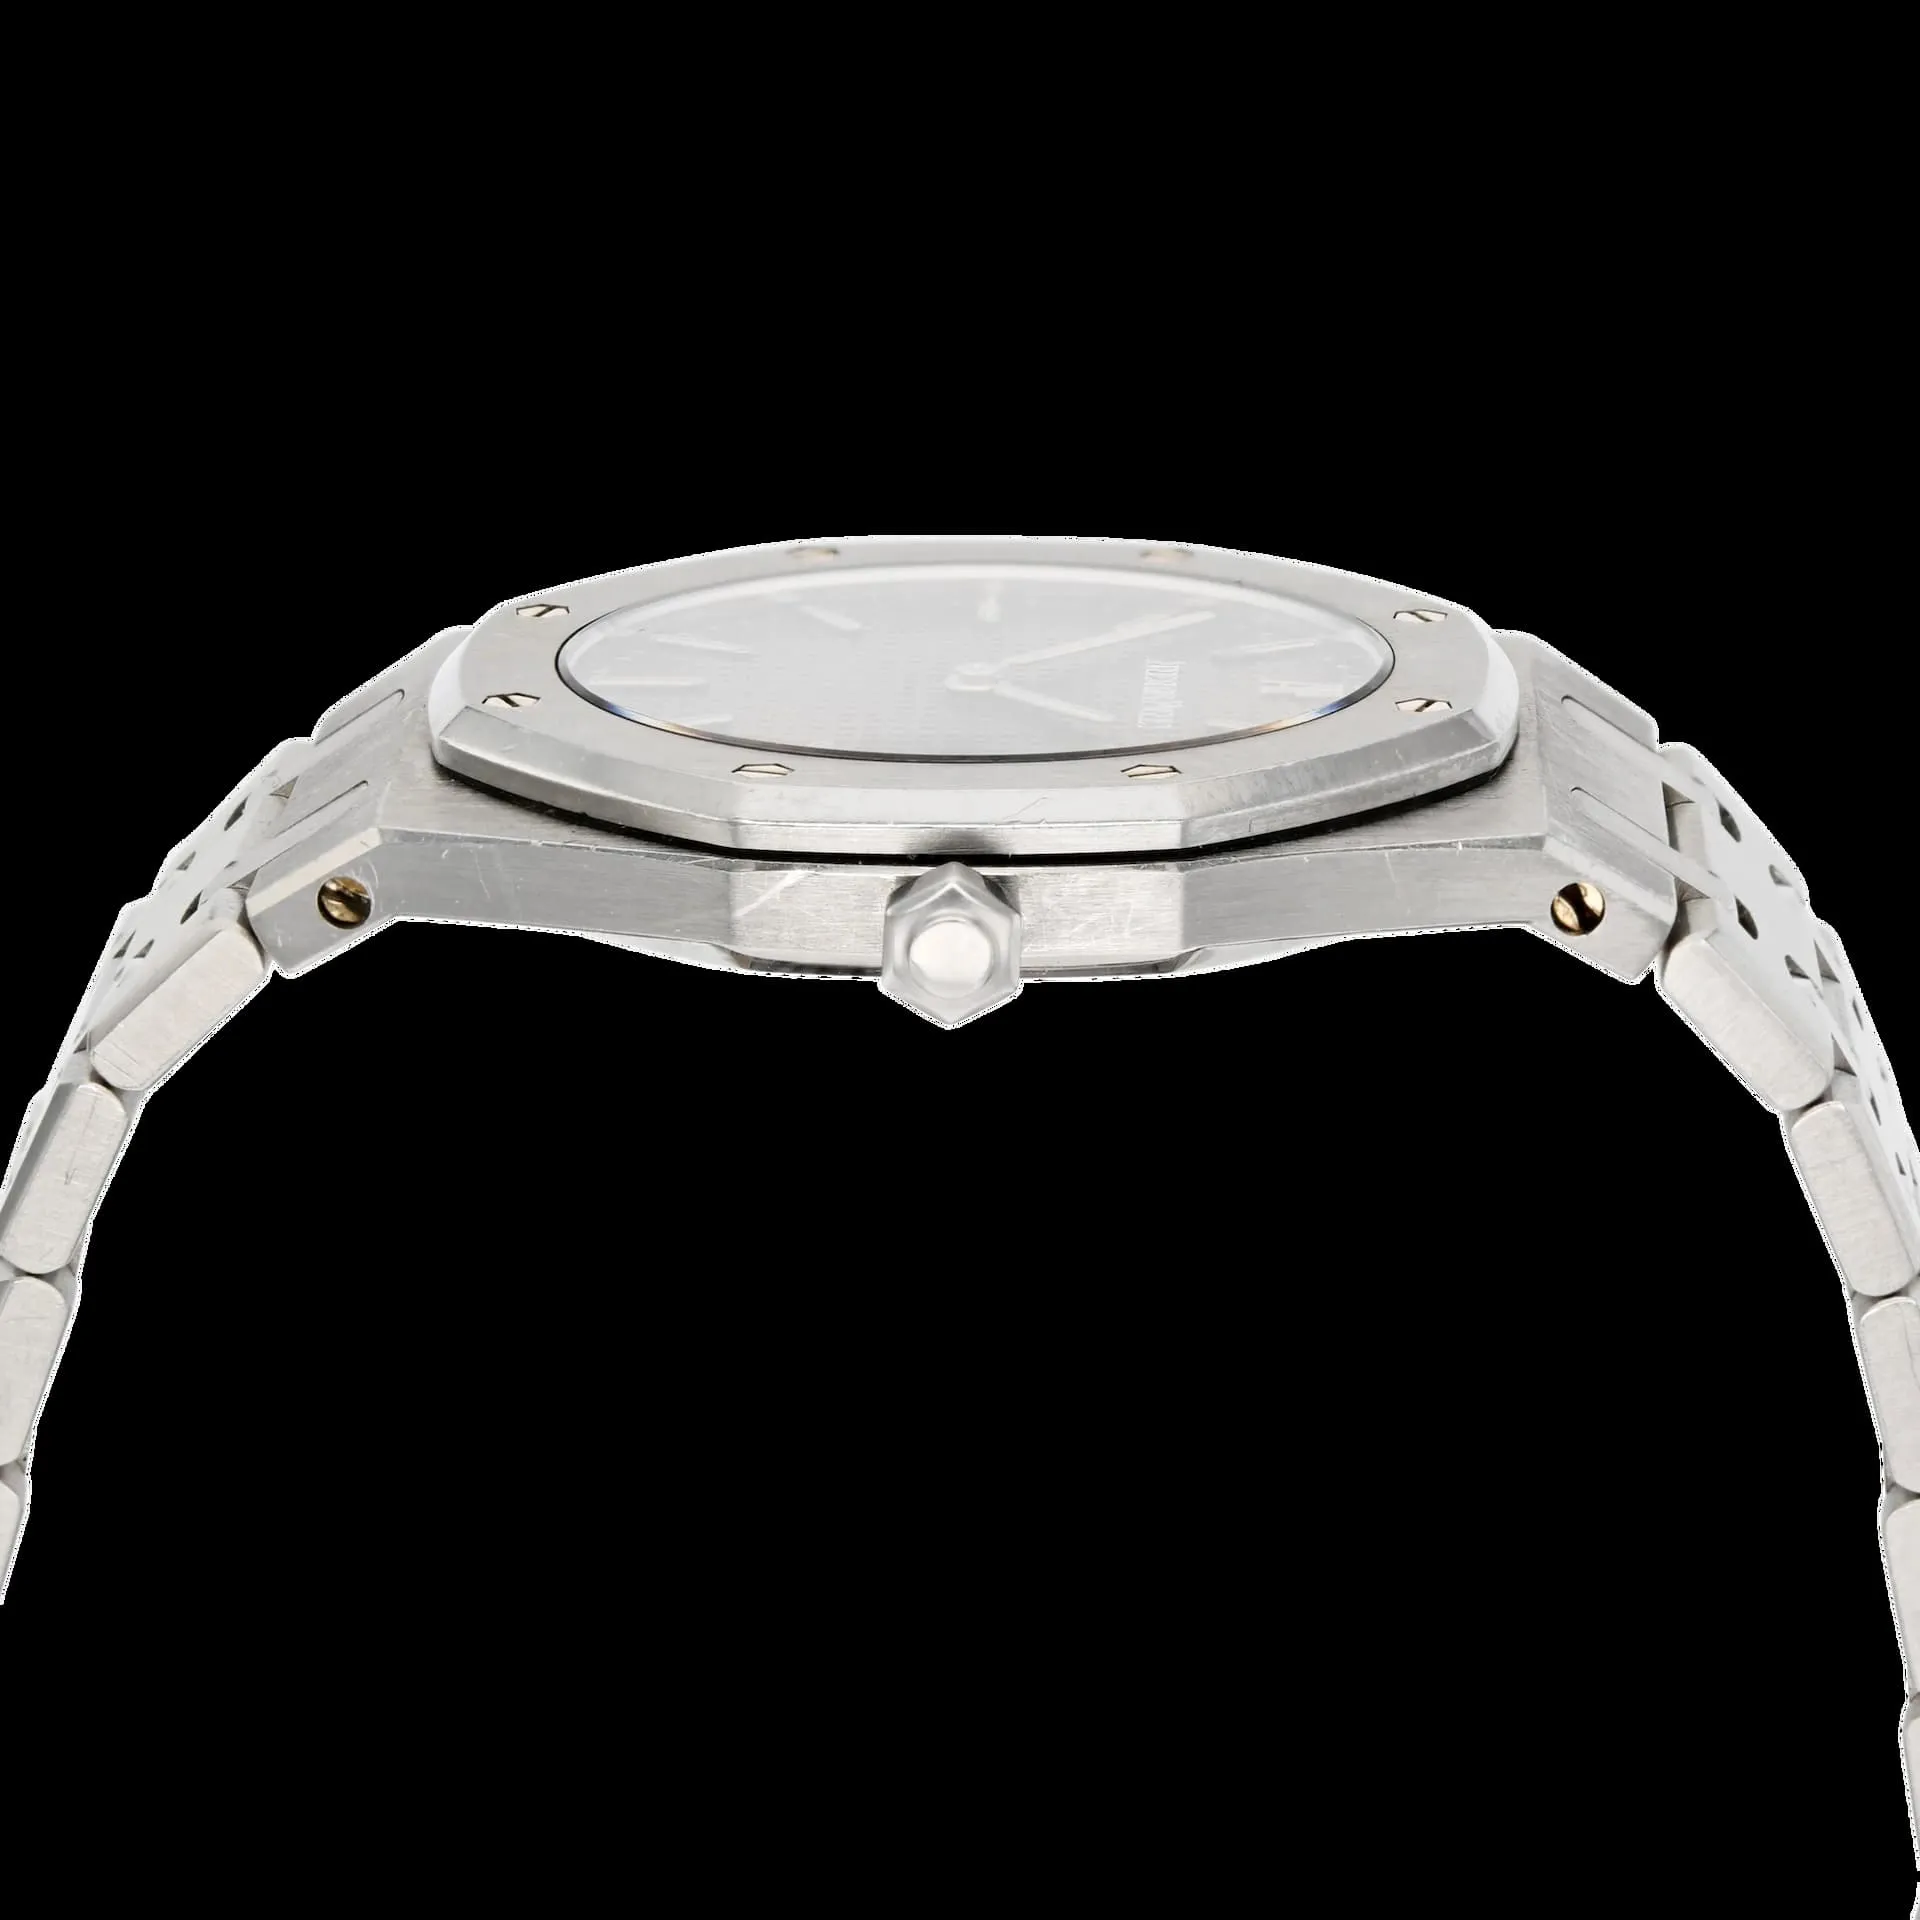 Audemars Piguet Royal Oak 42mm Stainless steel “tropical” dial 2